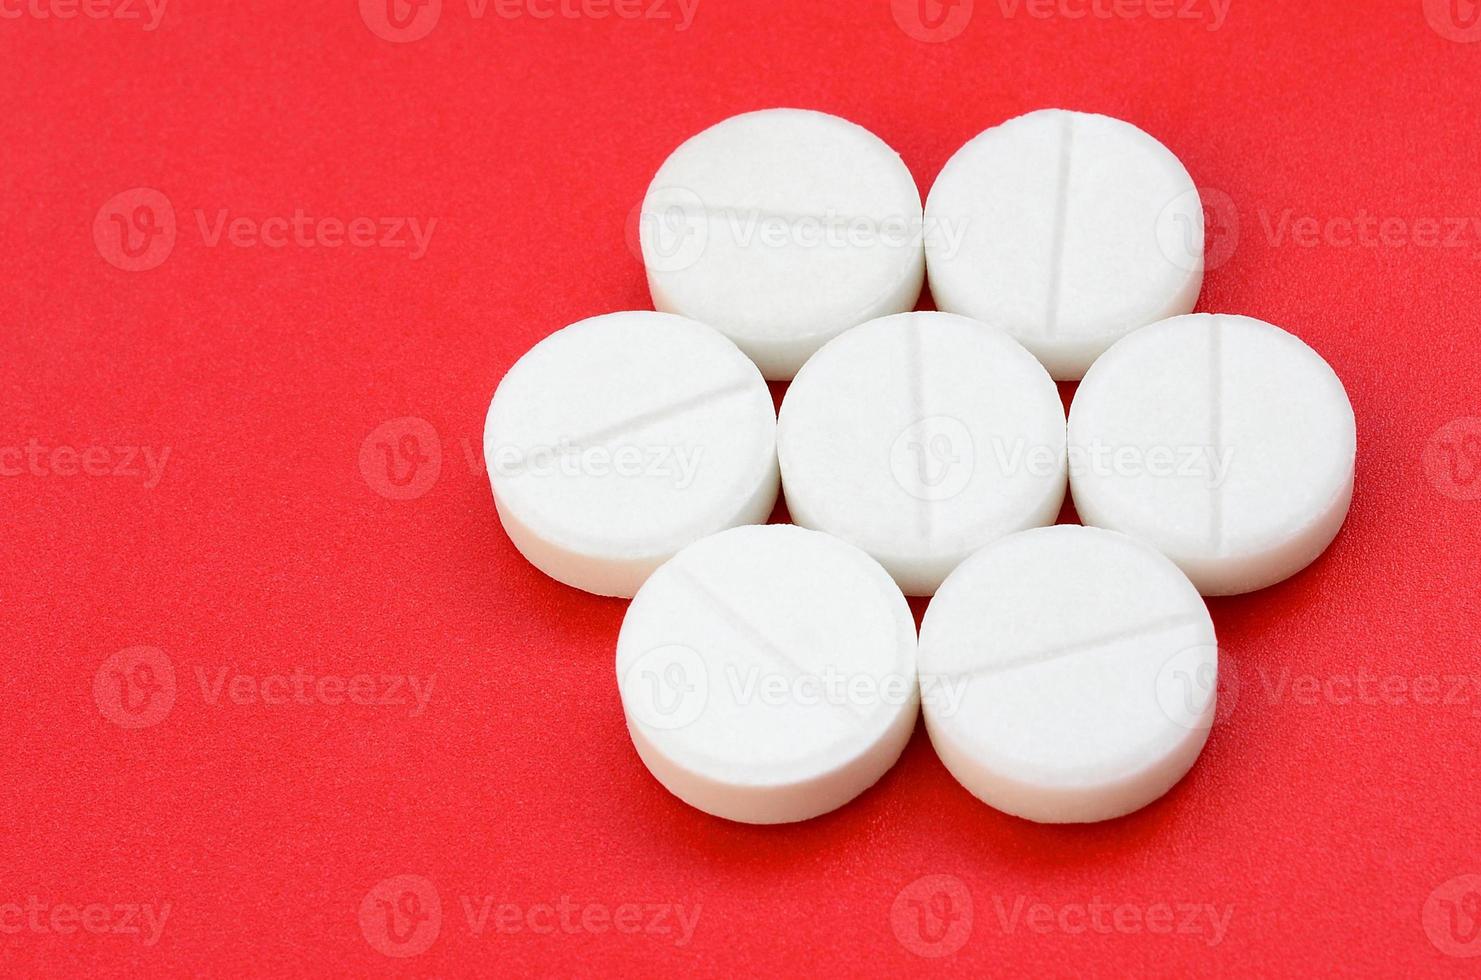 unas pocas tabletas blancas yacen sobre una superficie de fondo rojo brillante. imagen de fondo sobre temas médicos y farmacéuticos foto